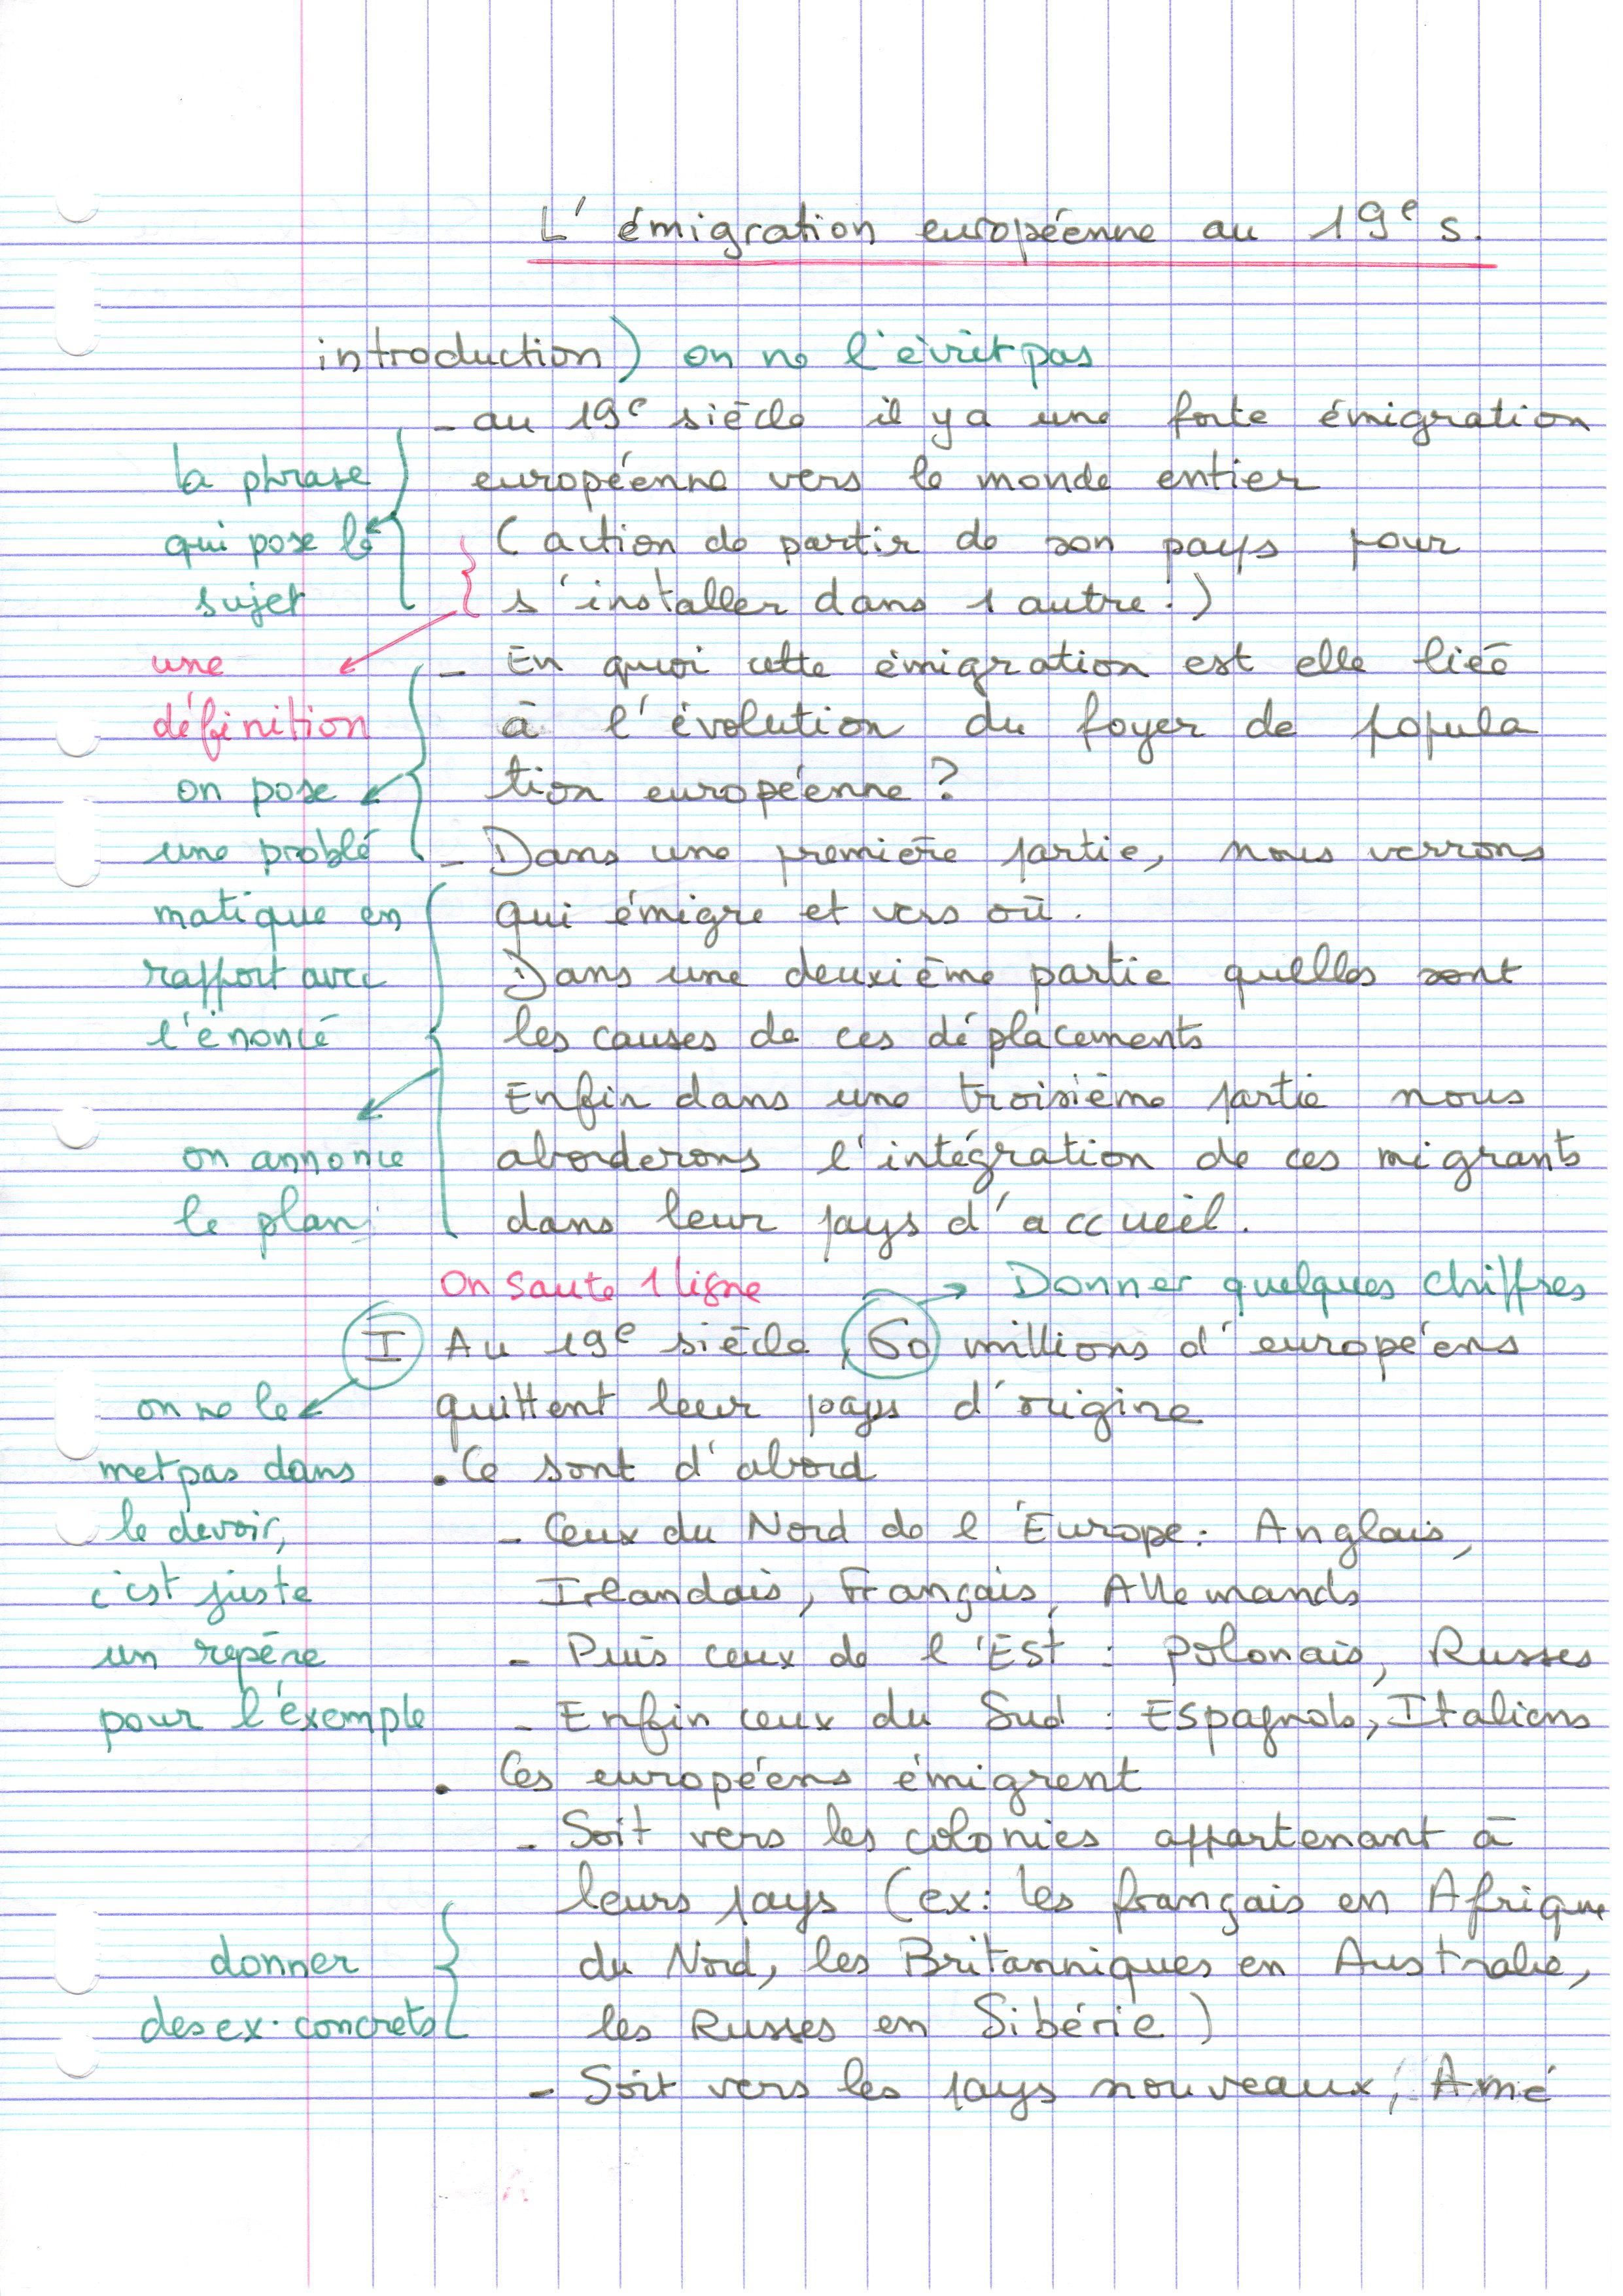 Bac Philo : la méthode pour la dissertation de philosophie - Bac - Le Parisien Etudiant